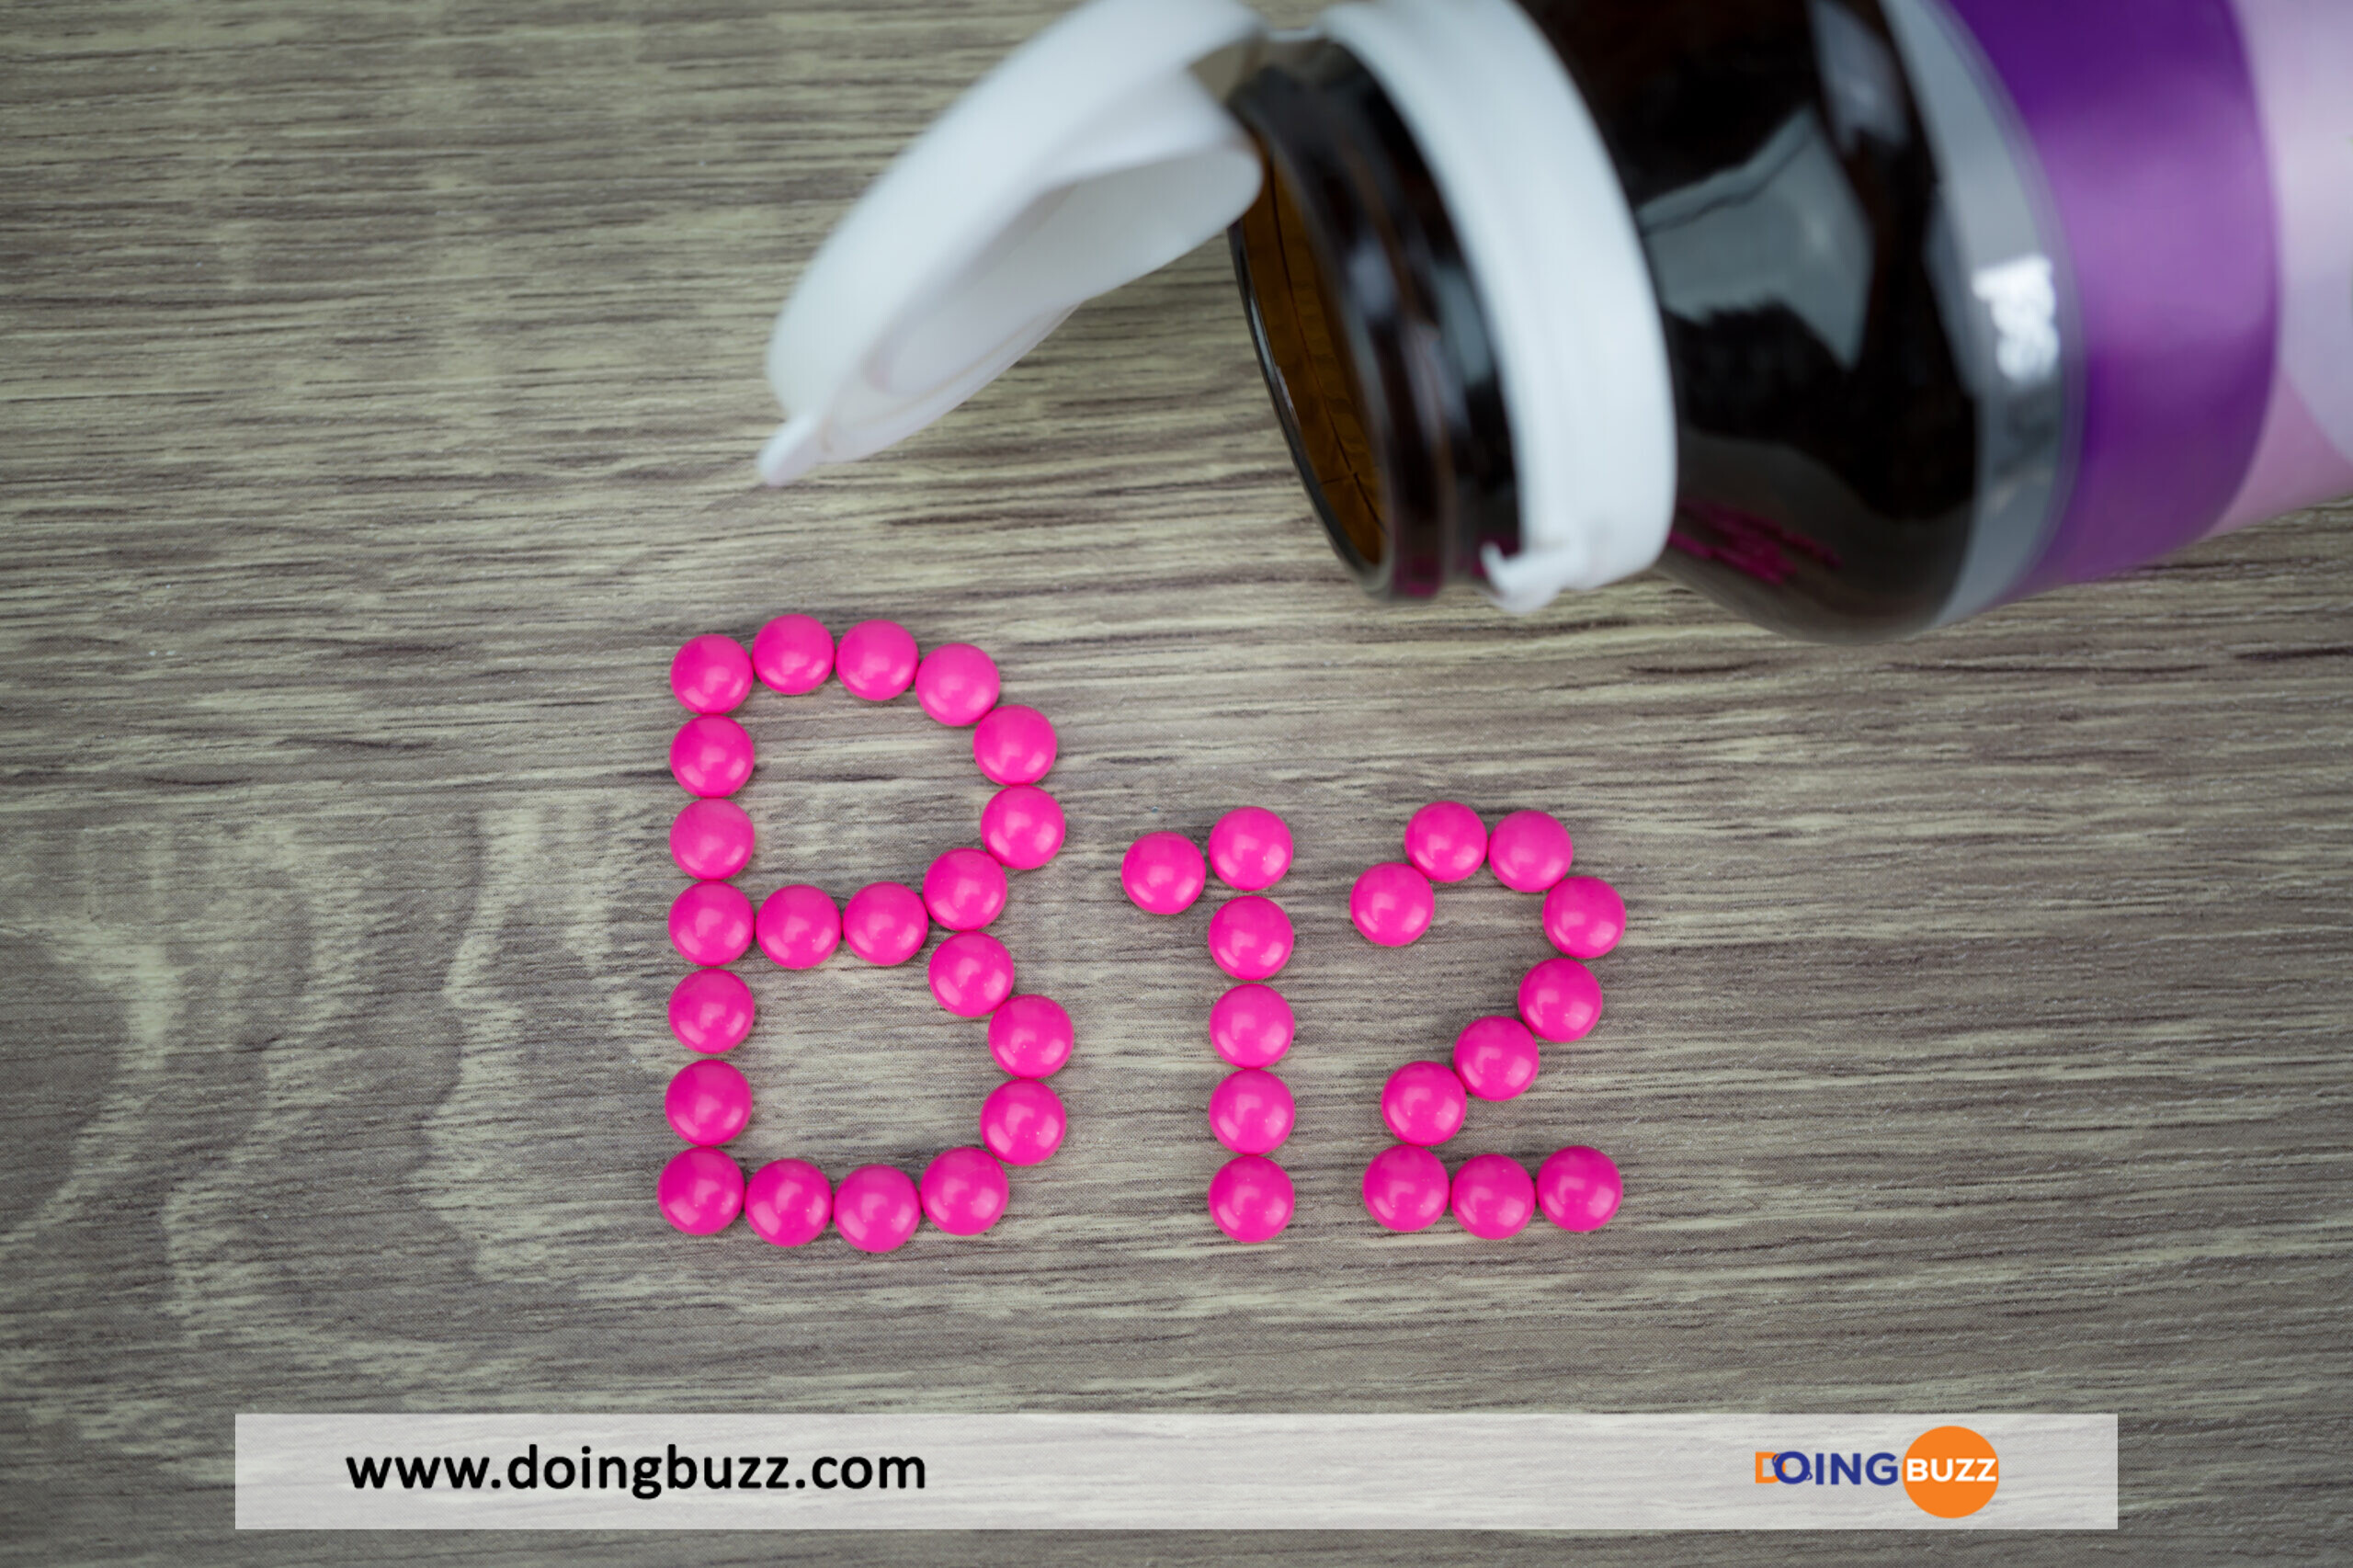 La Vitamine B12 : Un Nutriment Essentiel Pour La Santé, Ses Bienfaits